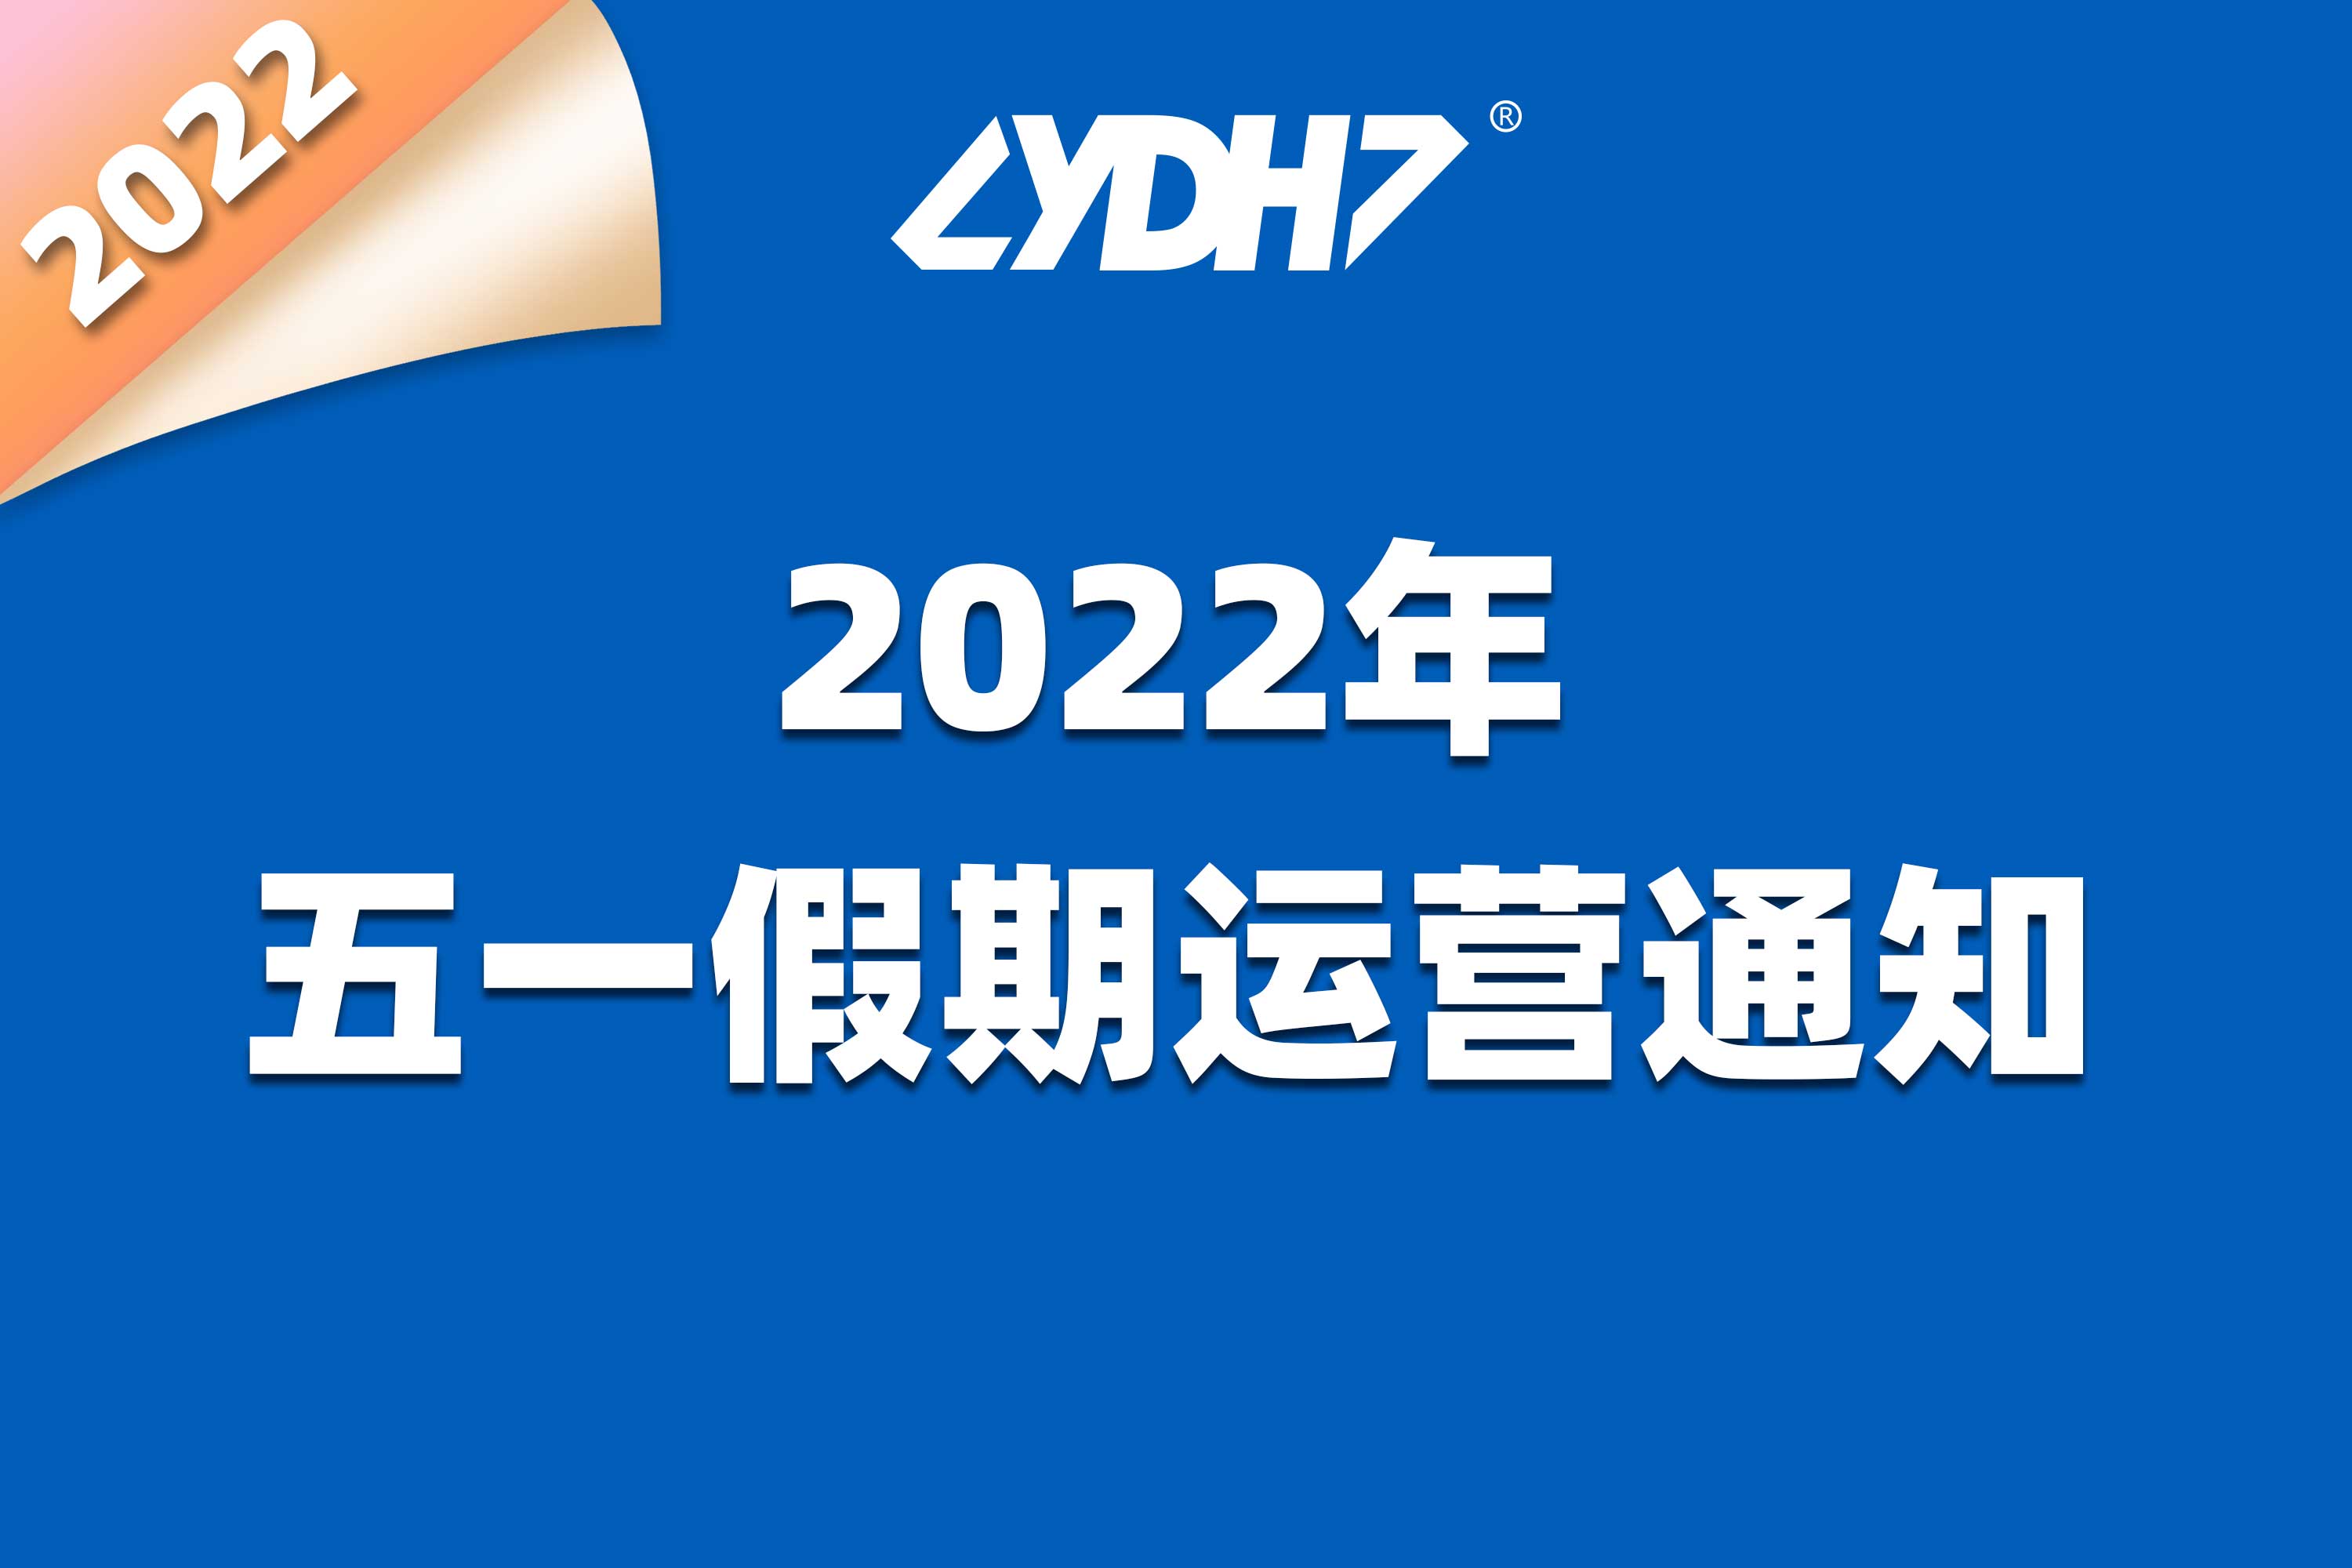 YDH 2022年五一劳动节假期运营安排